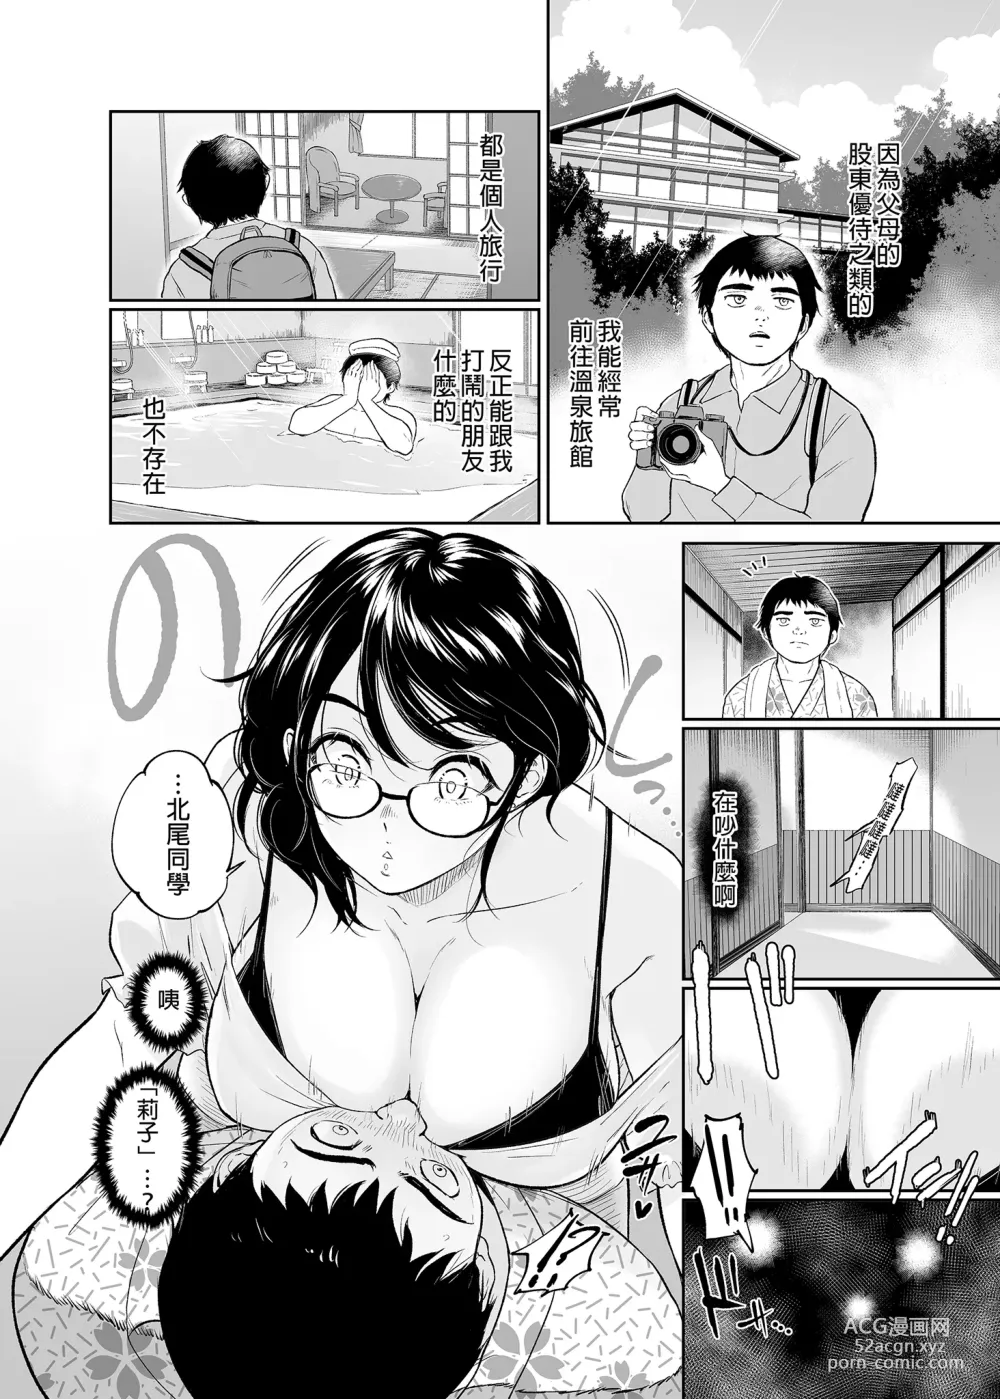 Page 6 of doujinshi 処女を散らす部屋ーキモオタの僕がクラスのギャルの処女喪失に付き合うことになった件